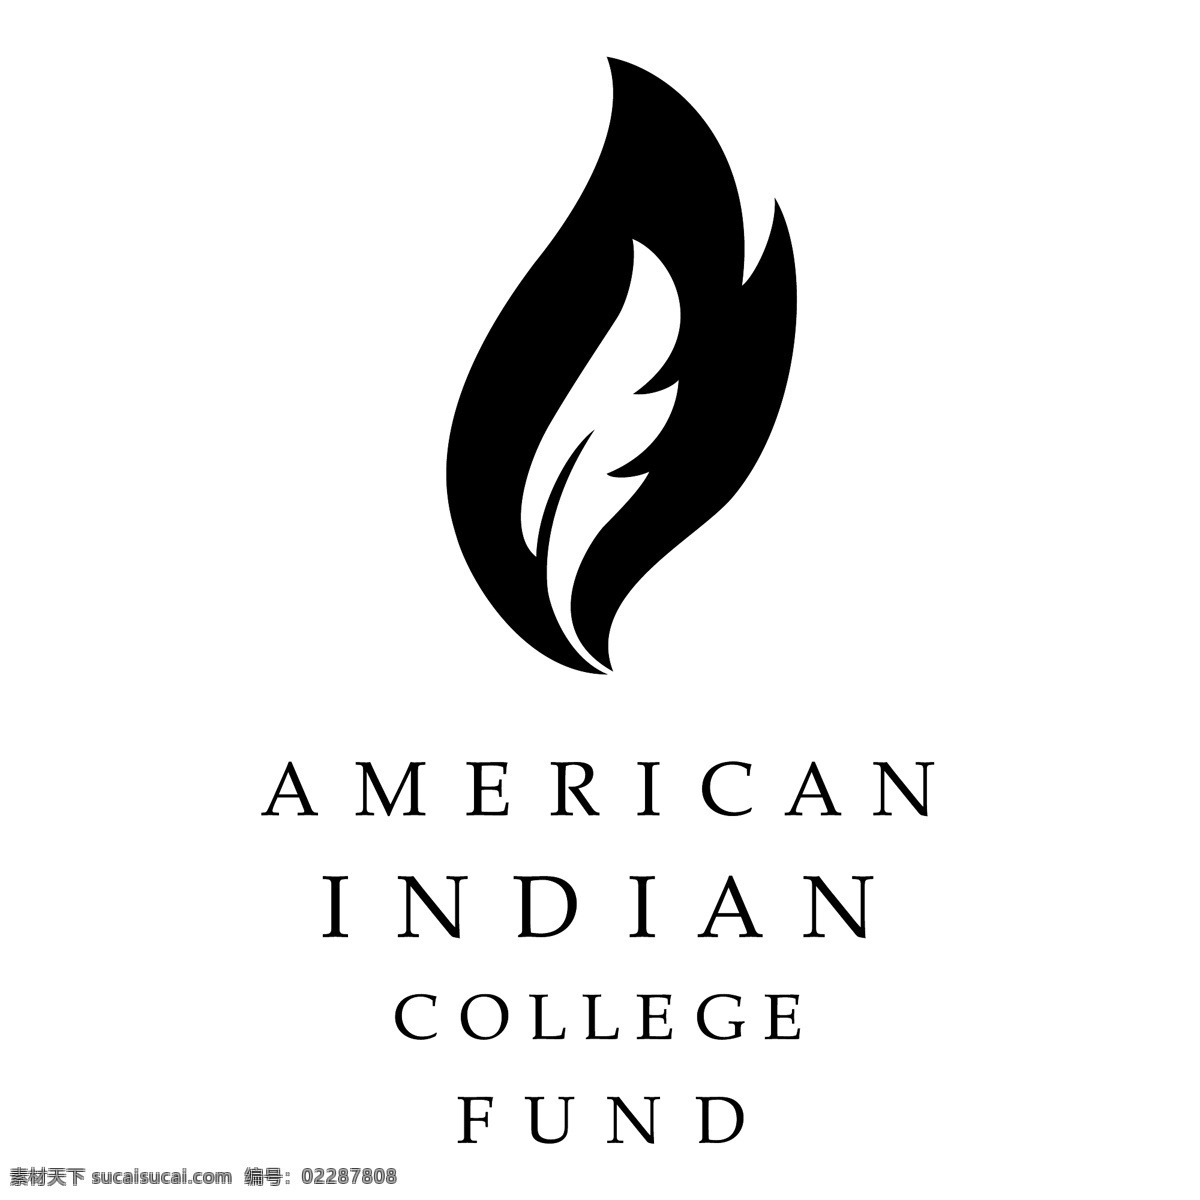 美国 印第安 大学 基金 学院 印度 美国的印度 印度大学 大学基金 免费 矢量 图形 美洲 印第安人 美国印第安人 印第安人形象 向量 建筑家居